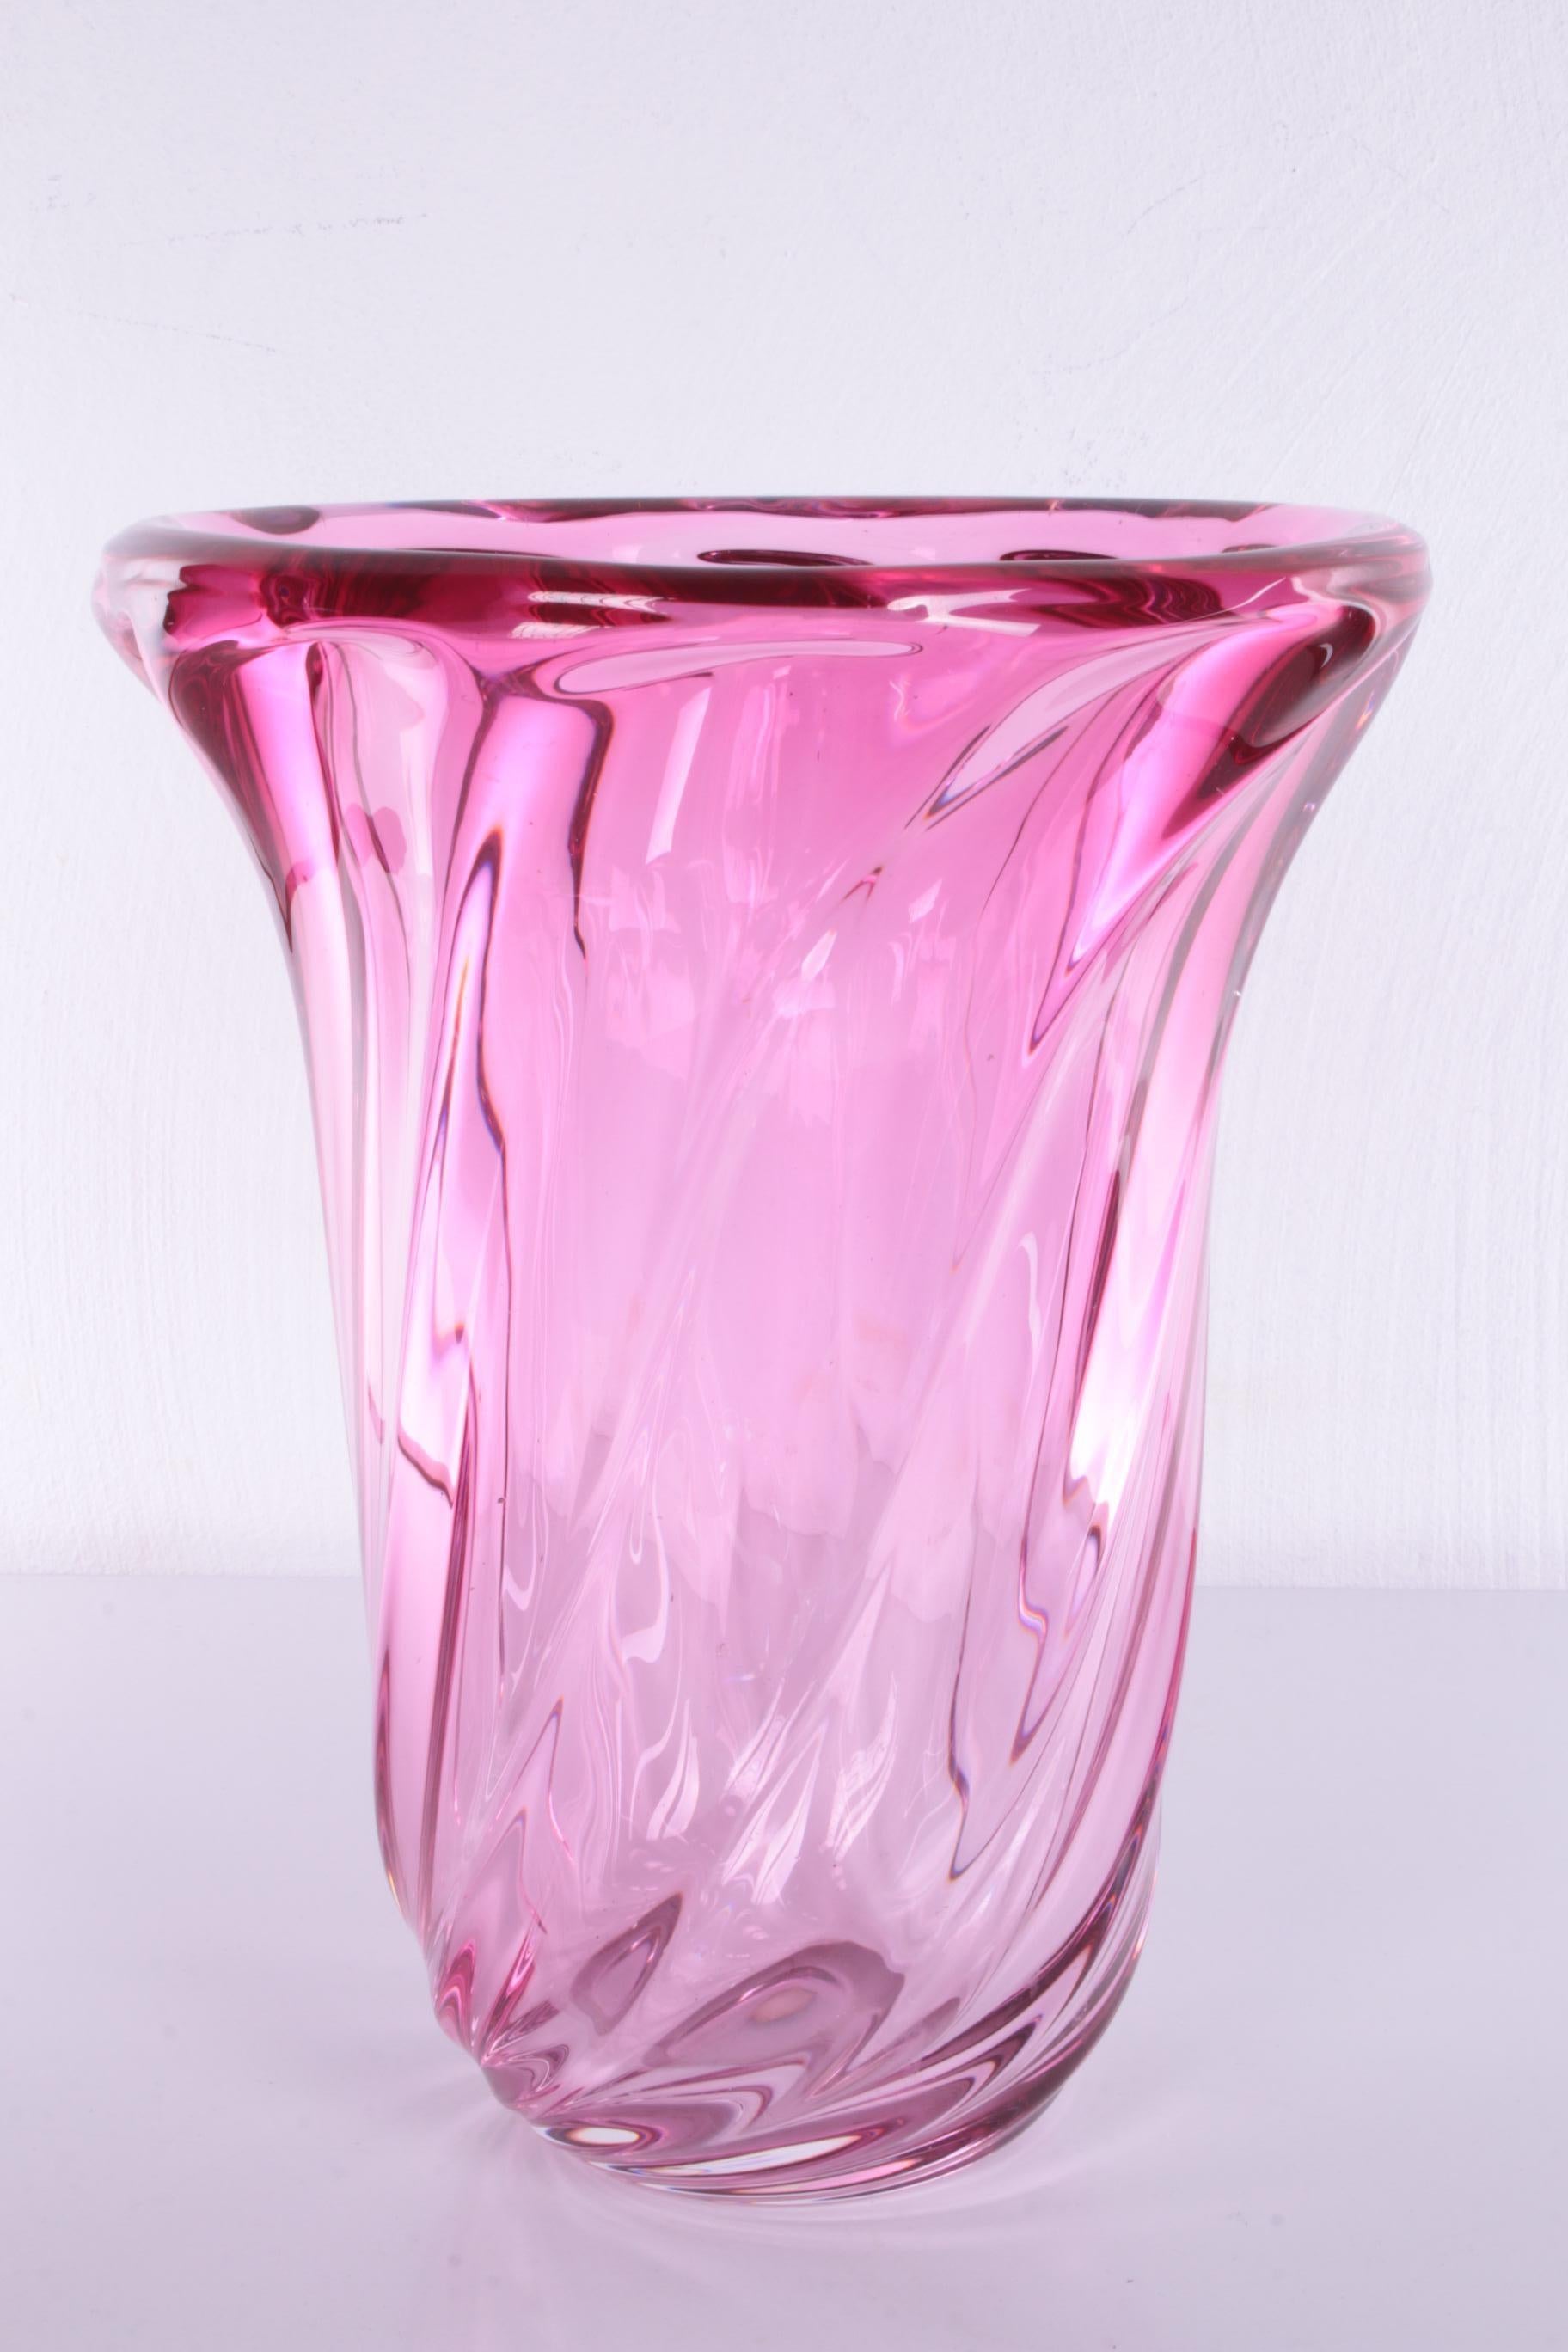 Grand vase en cristal Vintage Val St. Lambert cranberry


Un beau vase rose de Val Saint Lambert. Il s'agit d'un magnifique vase en verre lourd.

Le vase provient des années 1960 de la cristallerie belge Val Saint Lambert, dont la marque est